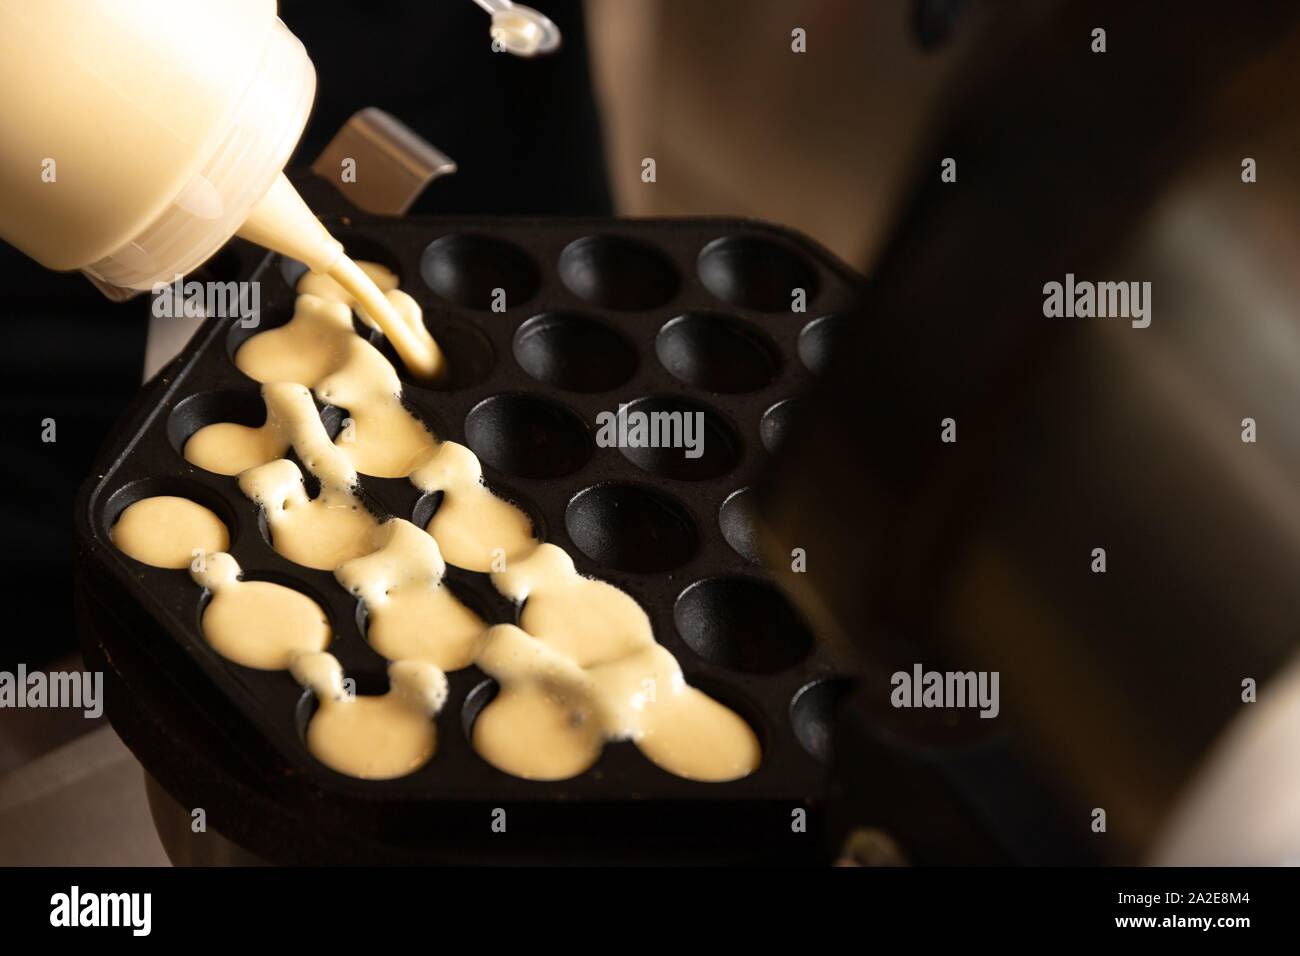 Making waffles on dark waffle iron, action shots Stock Photo